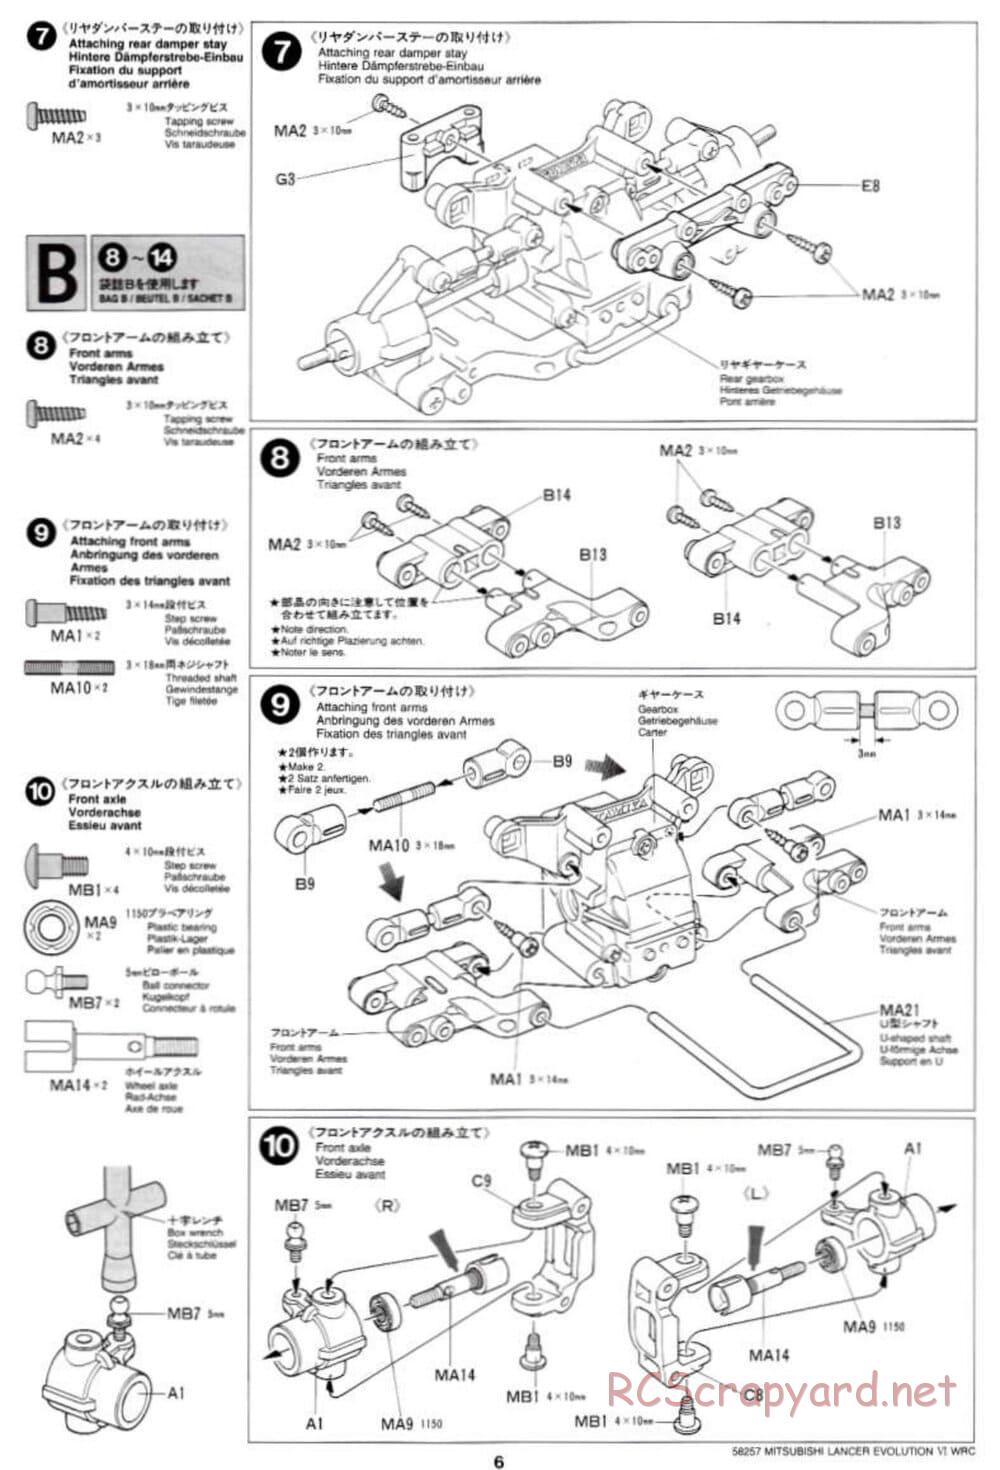 Tamiya - Mitsubishi Lancer Evolution VI WRC - TB-01 Chassis - Manual - Page 6